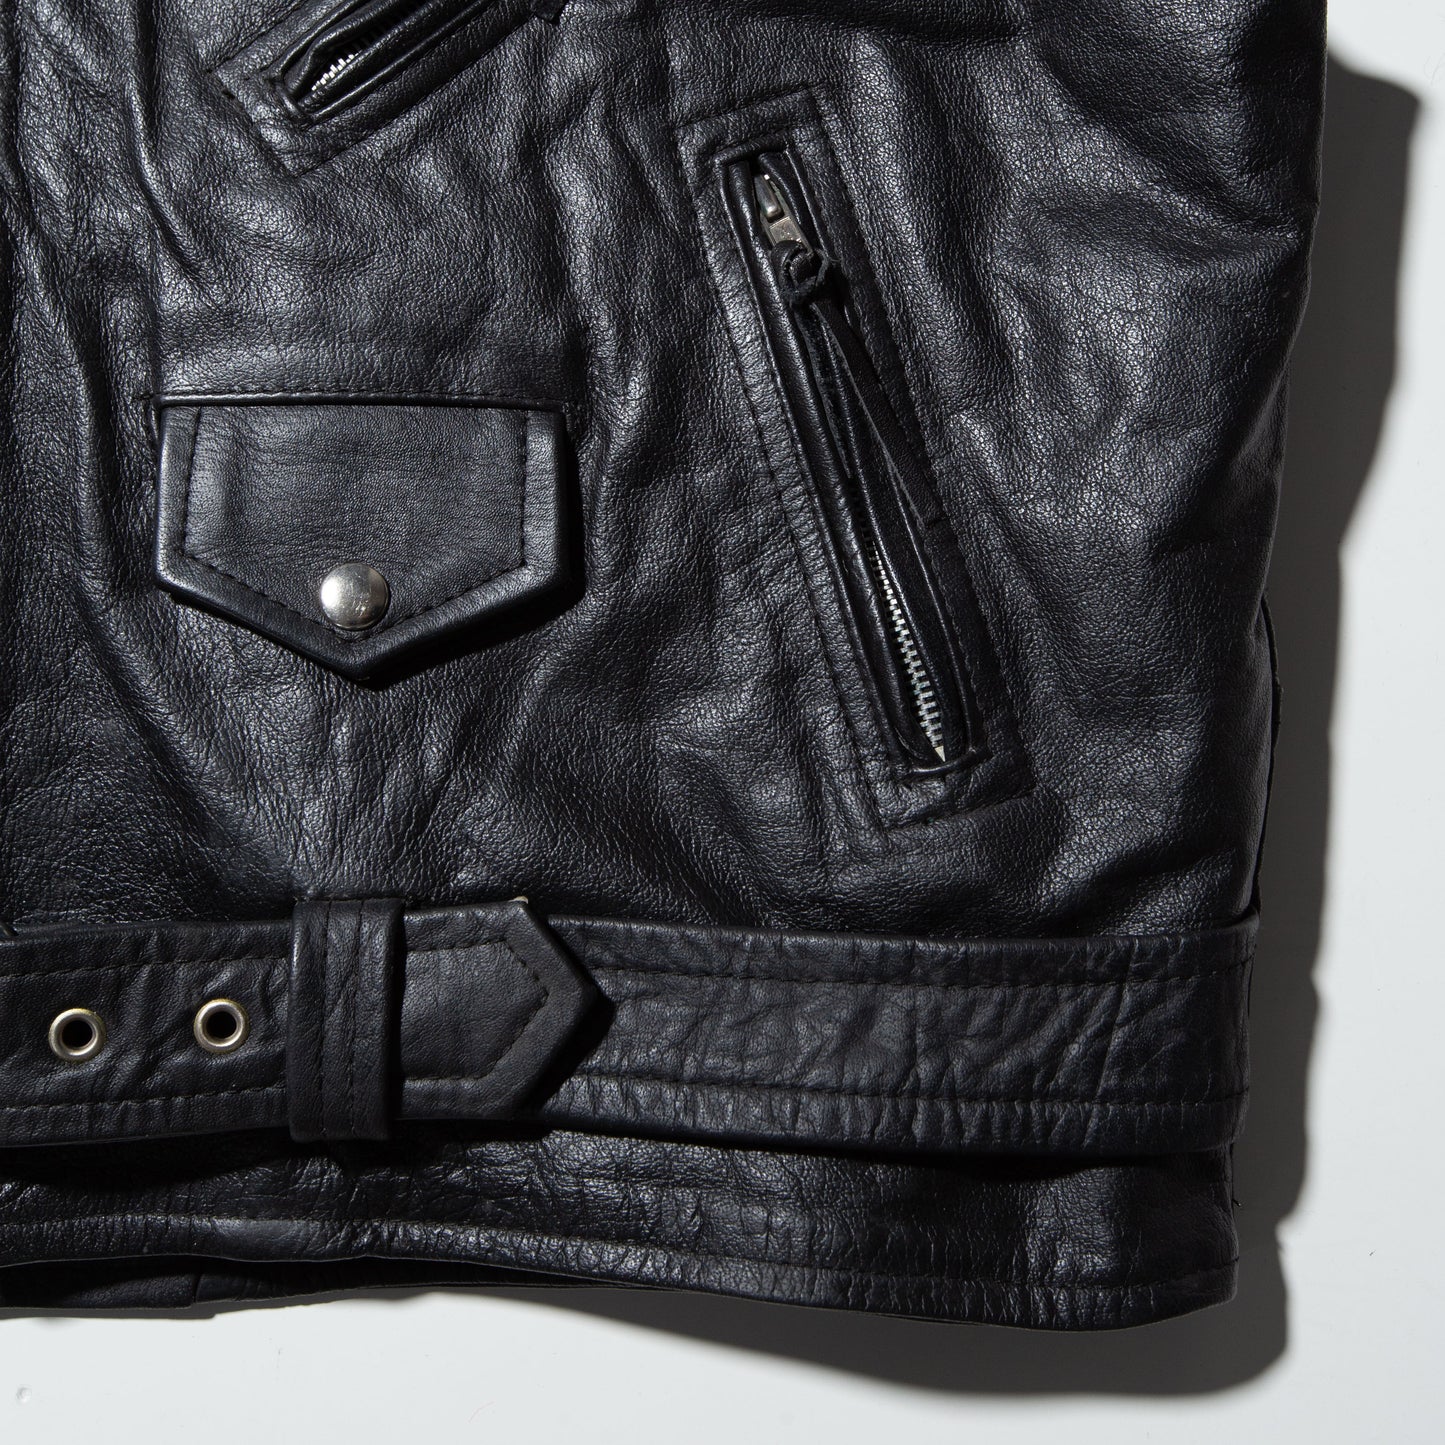 vintage leather riders vest